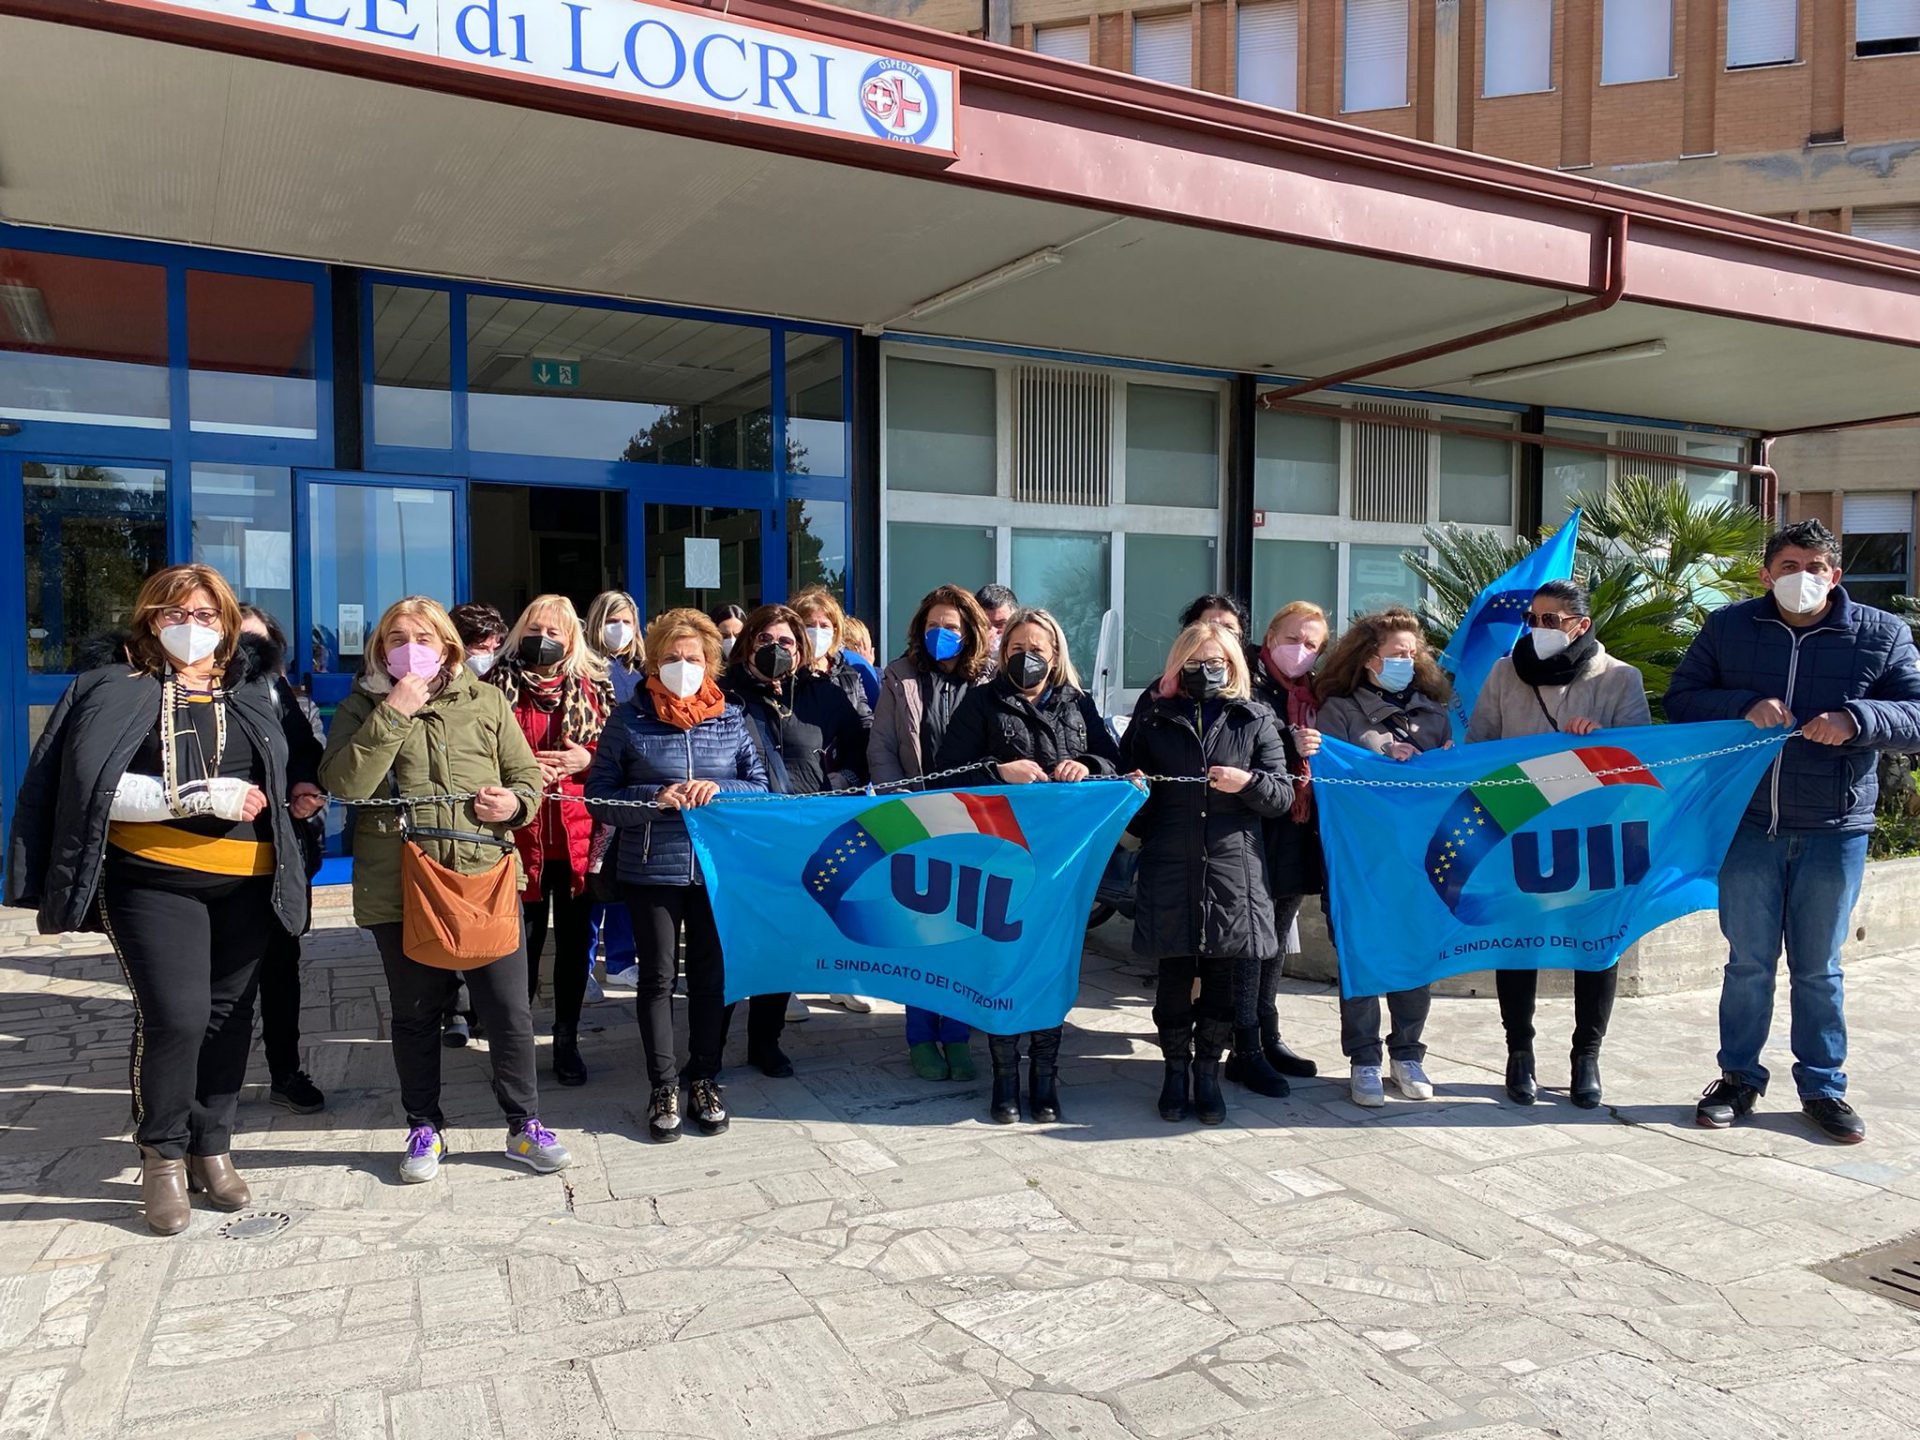 Pulizie all’ospedale di Locri, l’ultimatum del sindacato: «Senza stipendio servizio non garantito»